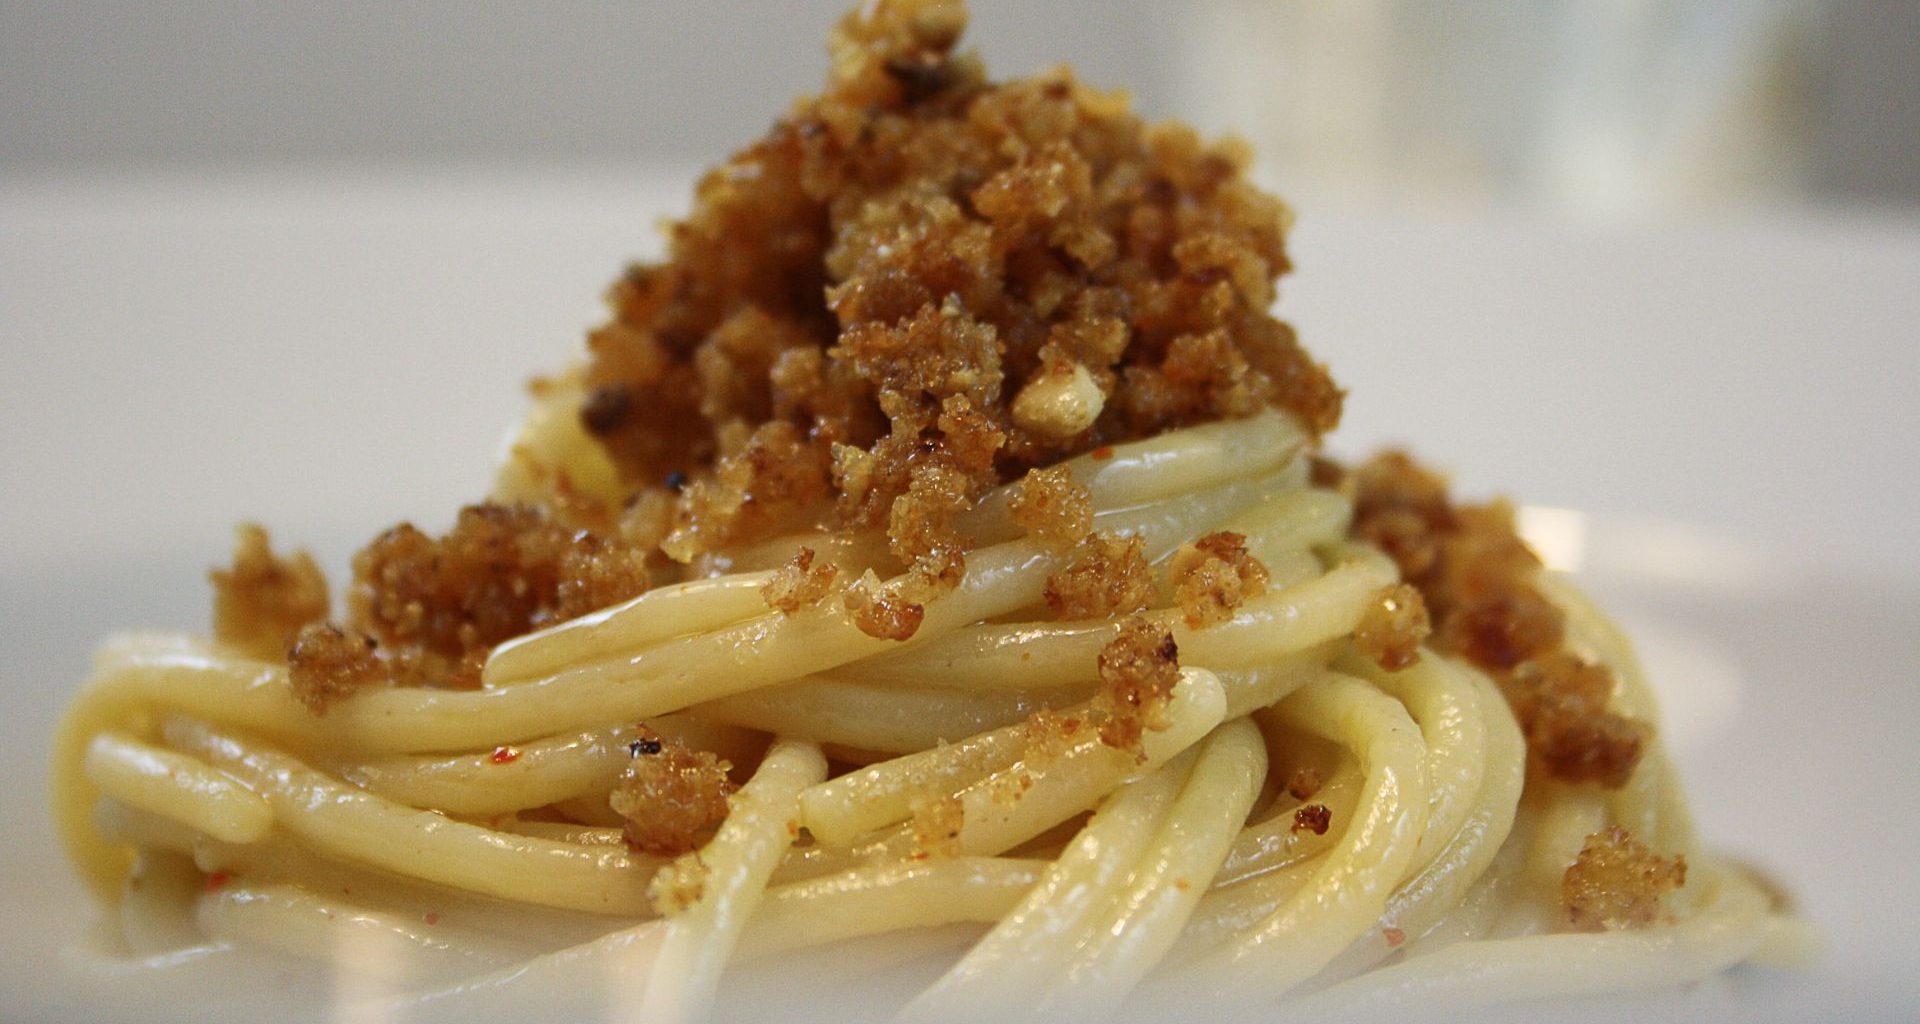 Wegańskie spaghetti ze składnikami zastępującymi mięso mięsa na talerzu.